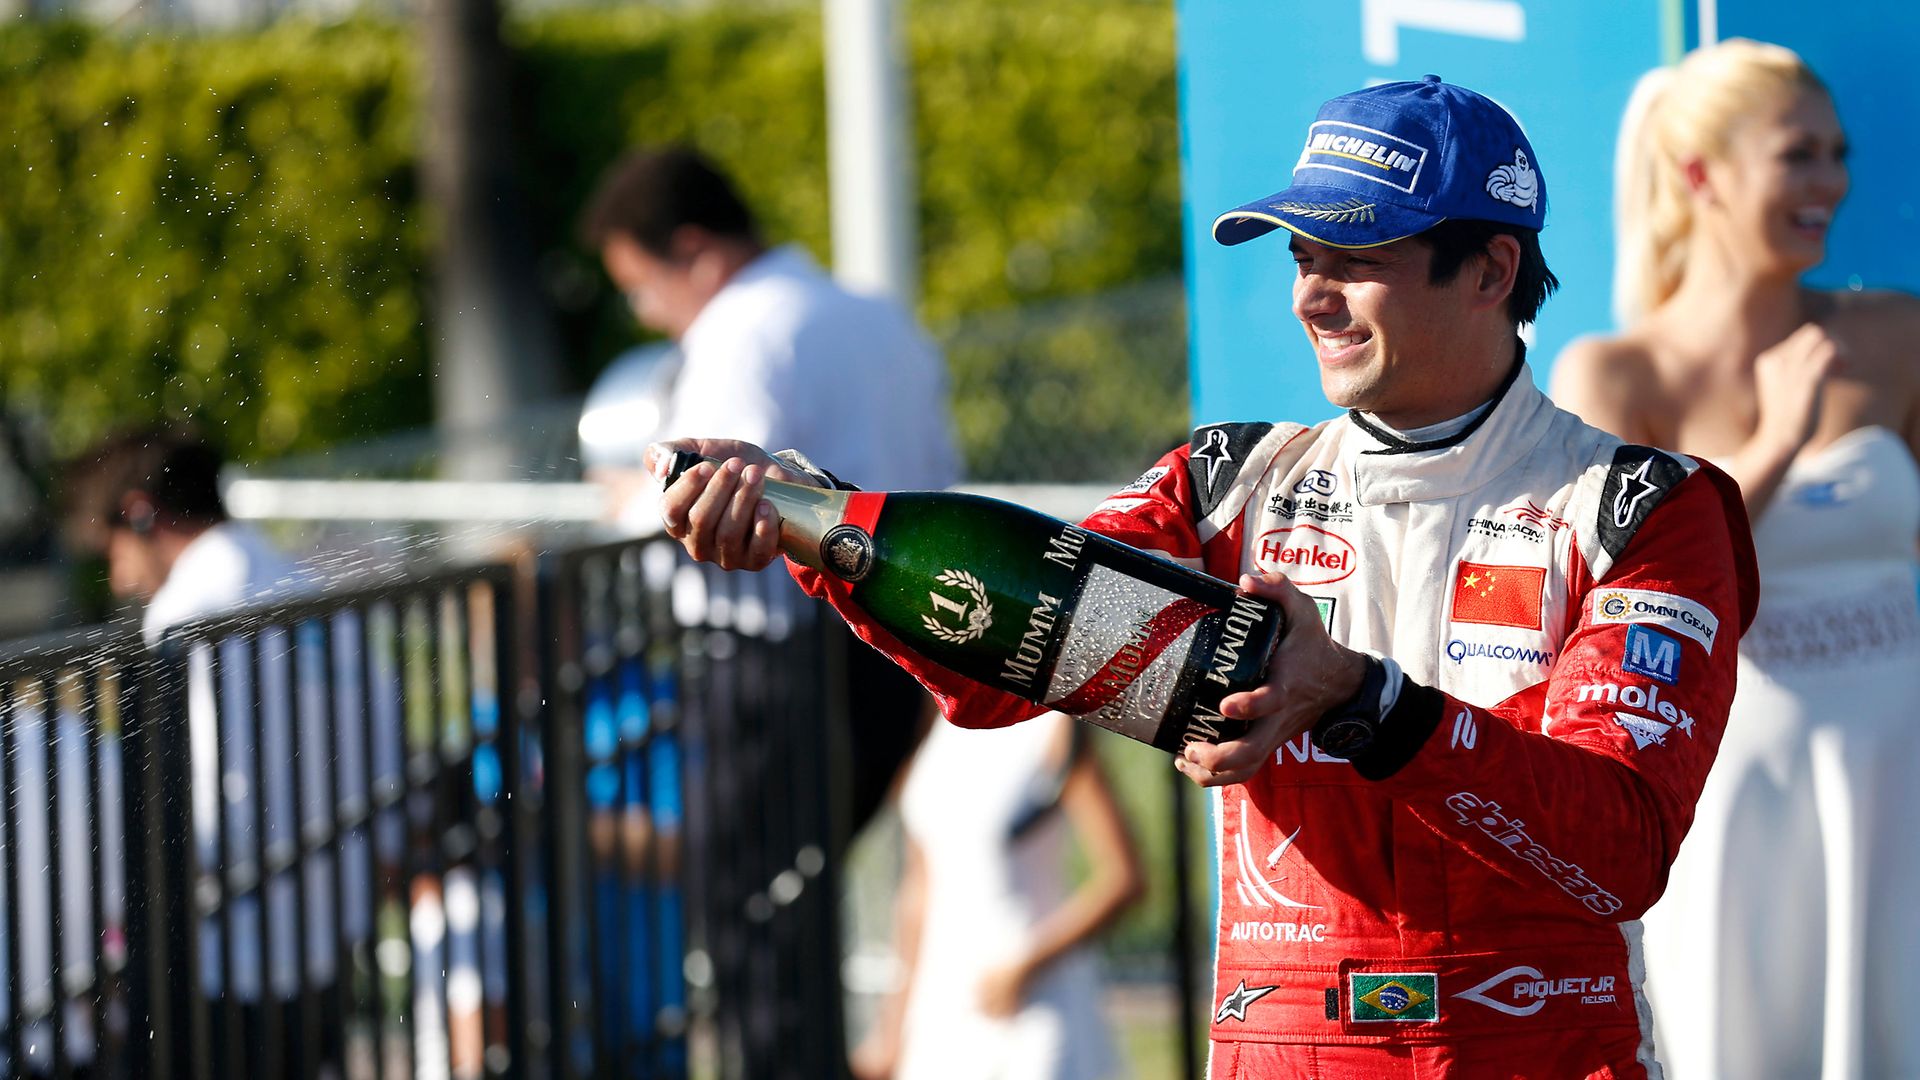 
Nach einem dritten Platz in Argentinien konnte Teampilot Nelson Piquet jr. das vergangene Rennen in Long Beach/USA für sich entscheiden.